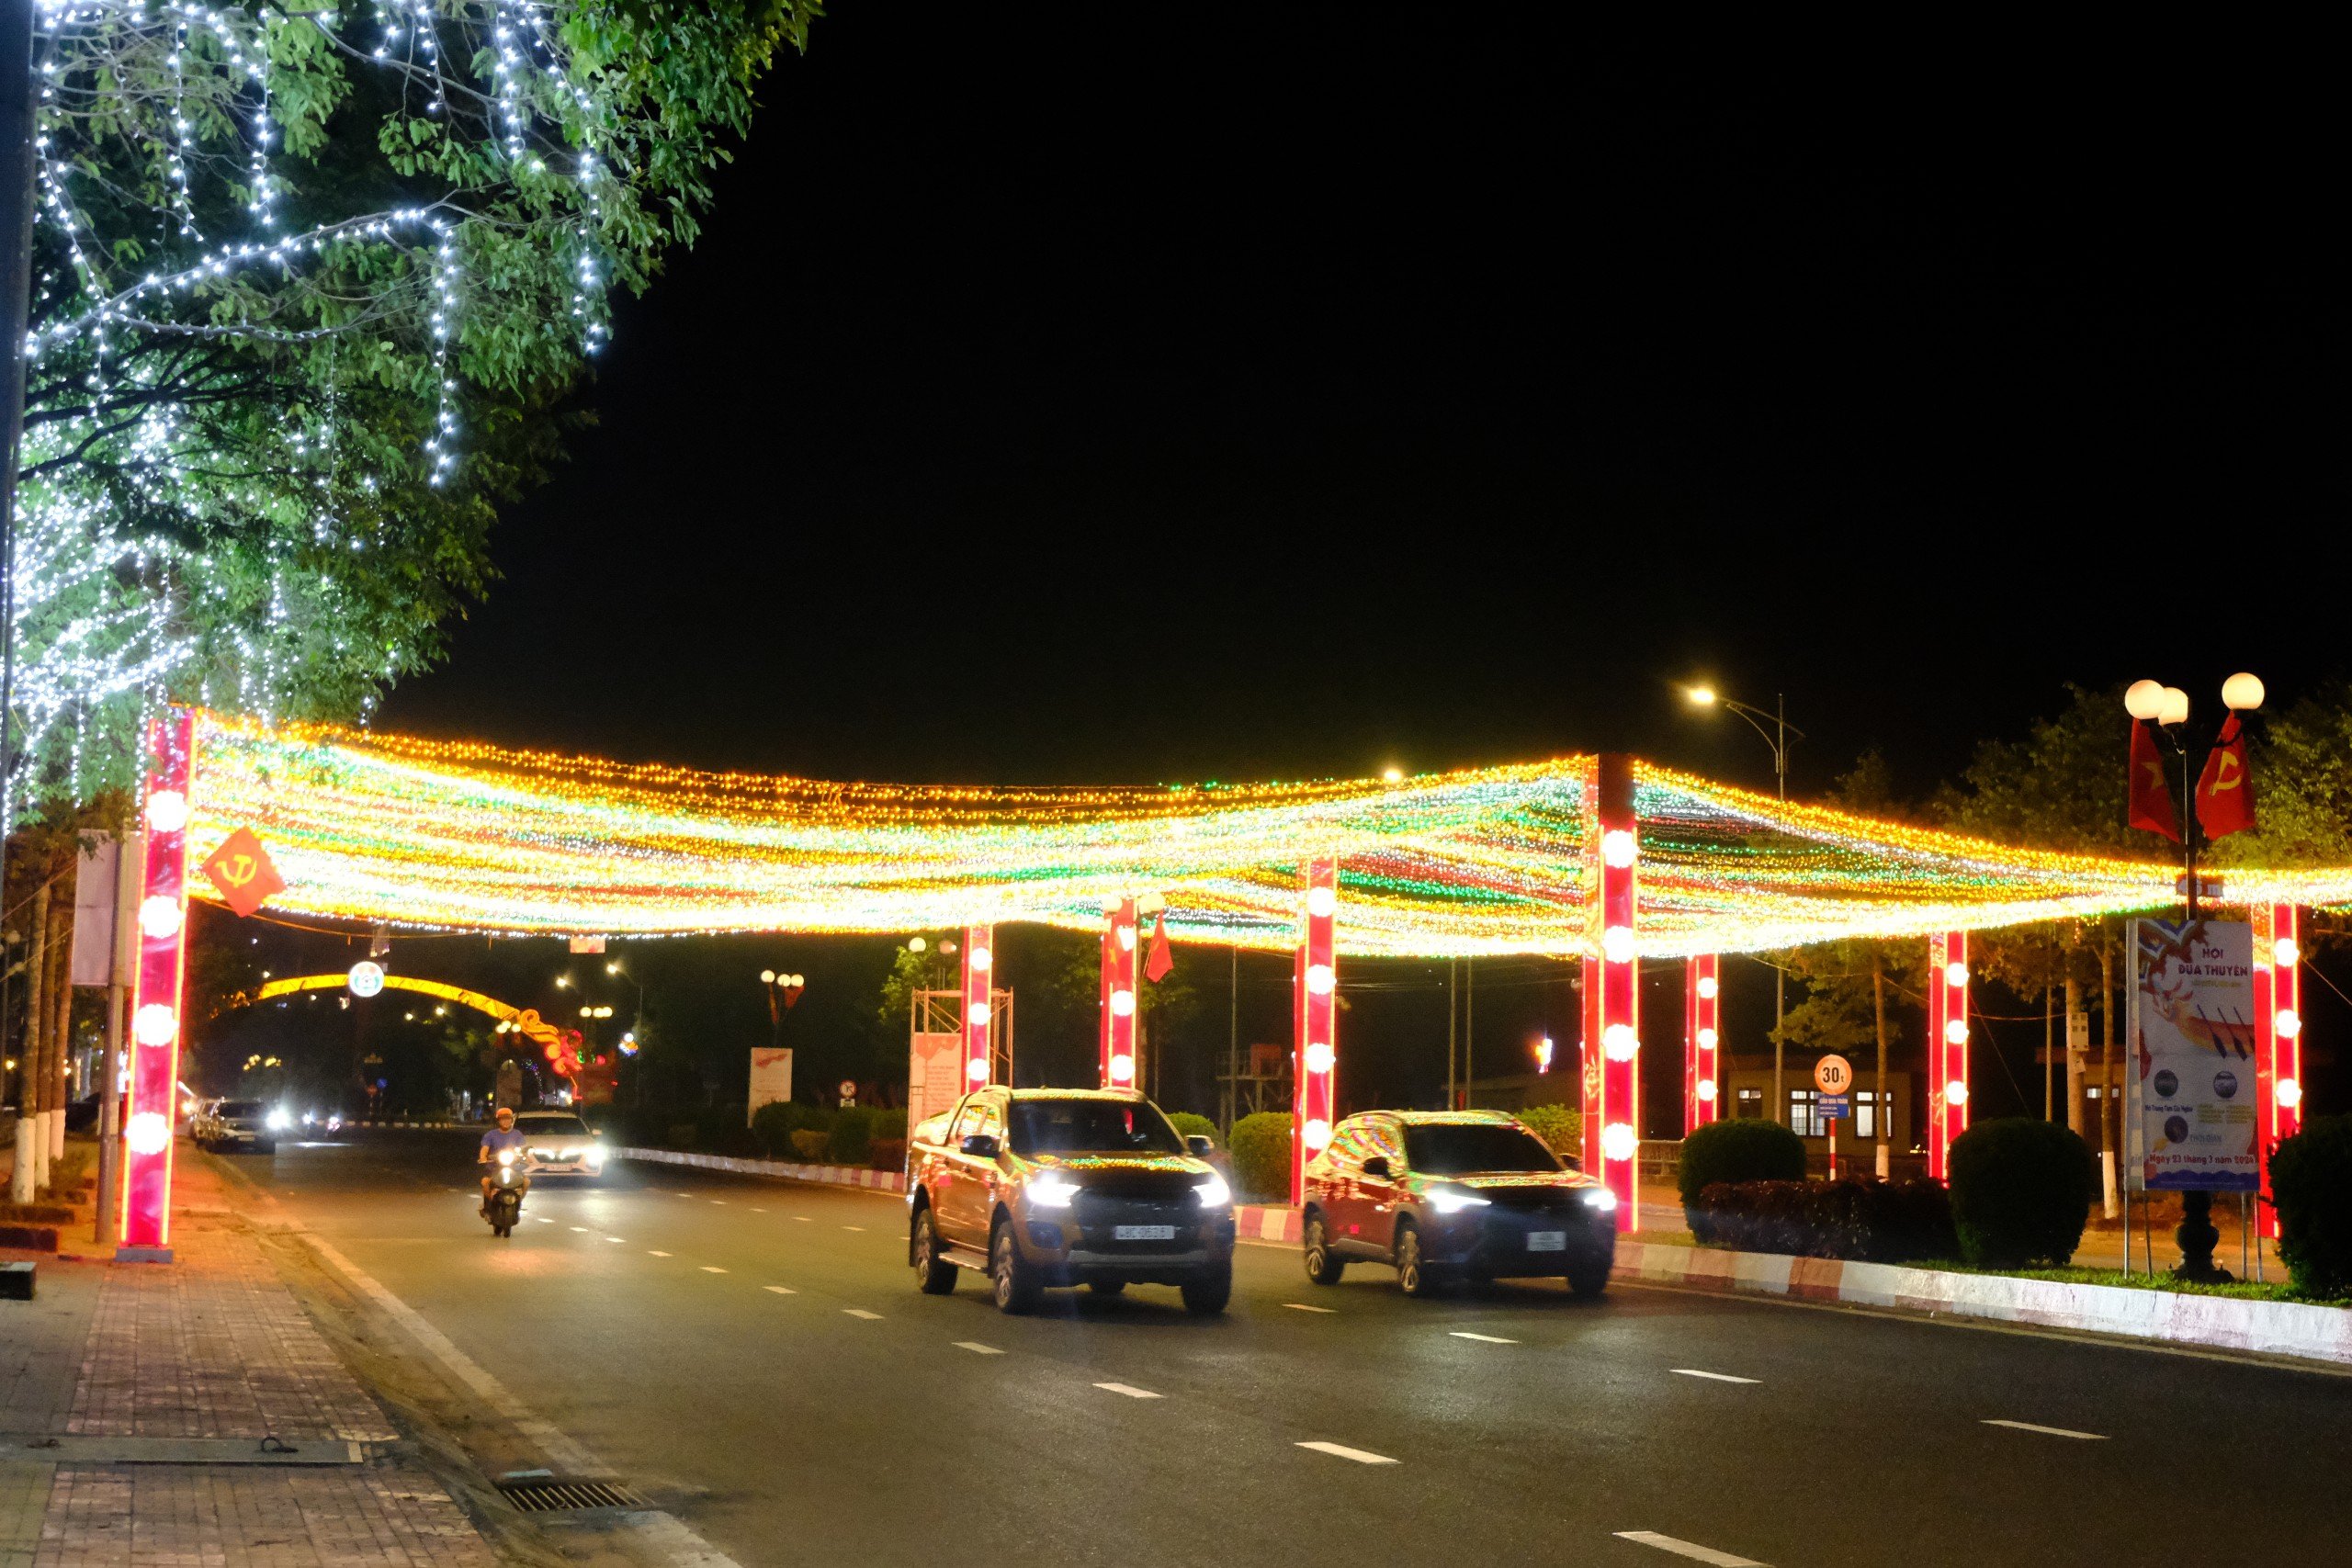 Trên các trục đường chính, hệ thống đèn led được thiết kế hiện đại, với hiệu ứng ánh sáng đa chiều, kết hợp với hệ thống chiếu sáng công cộng làm cho thành phố lung linh về đêm.